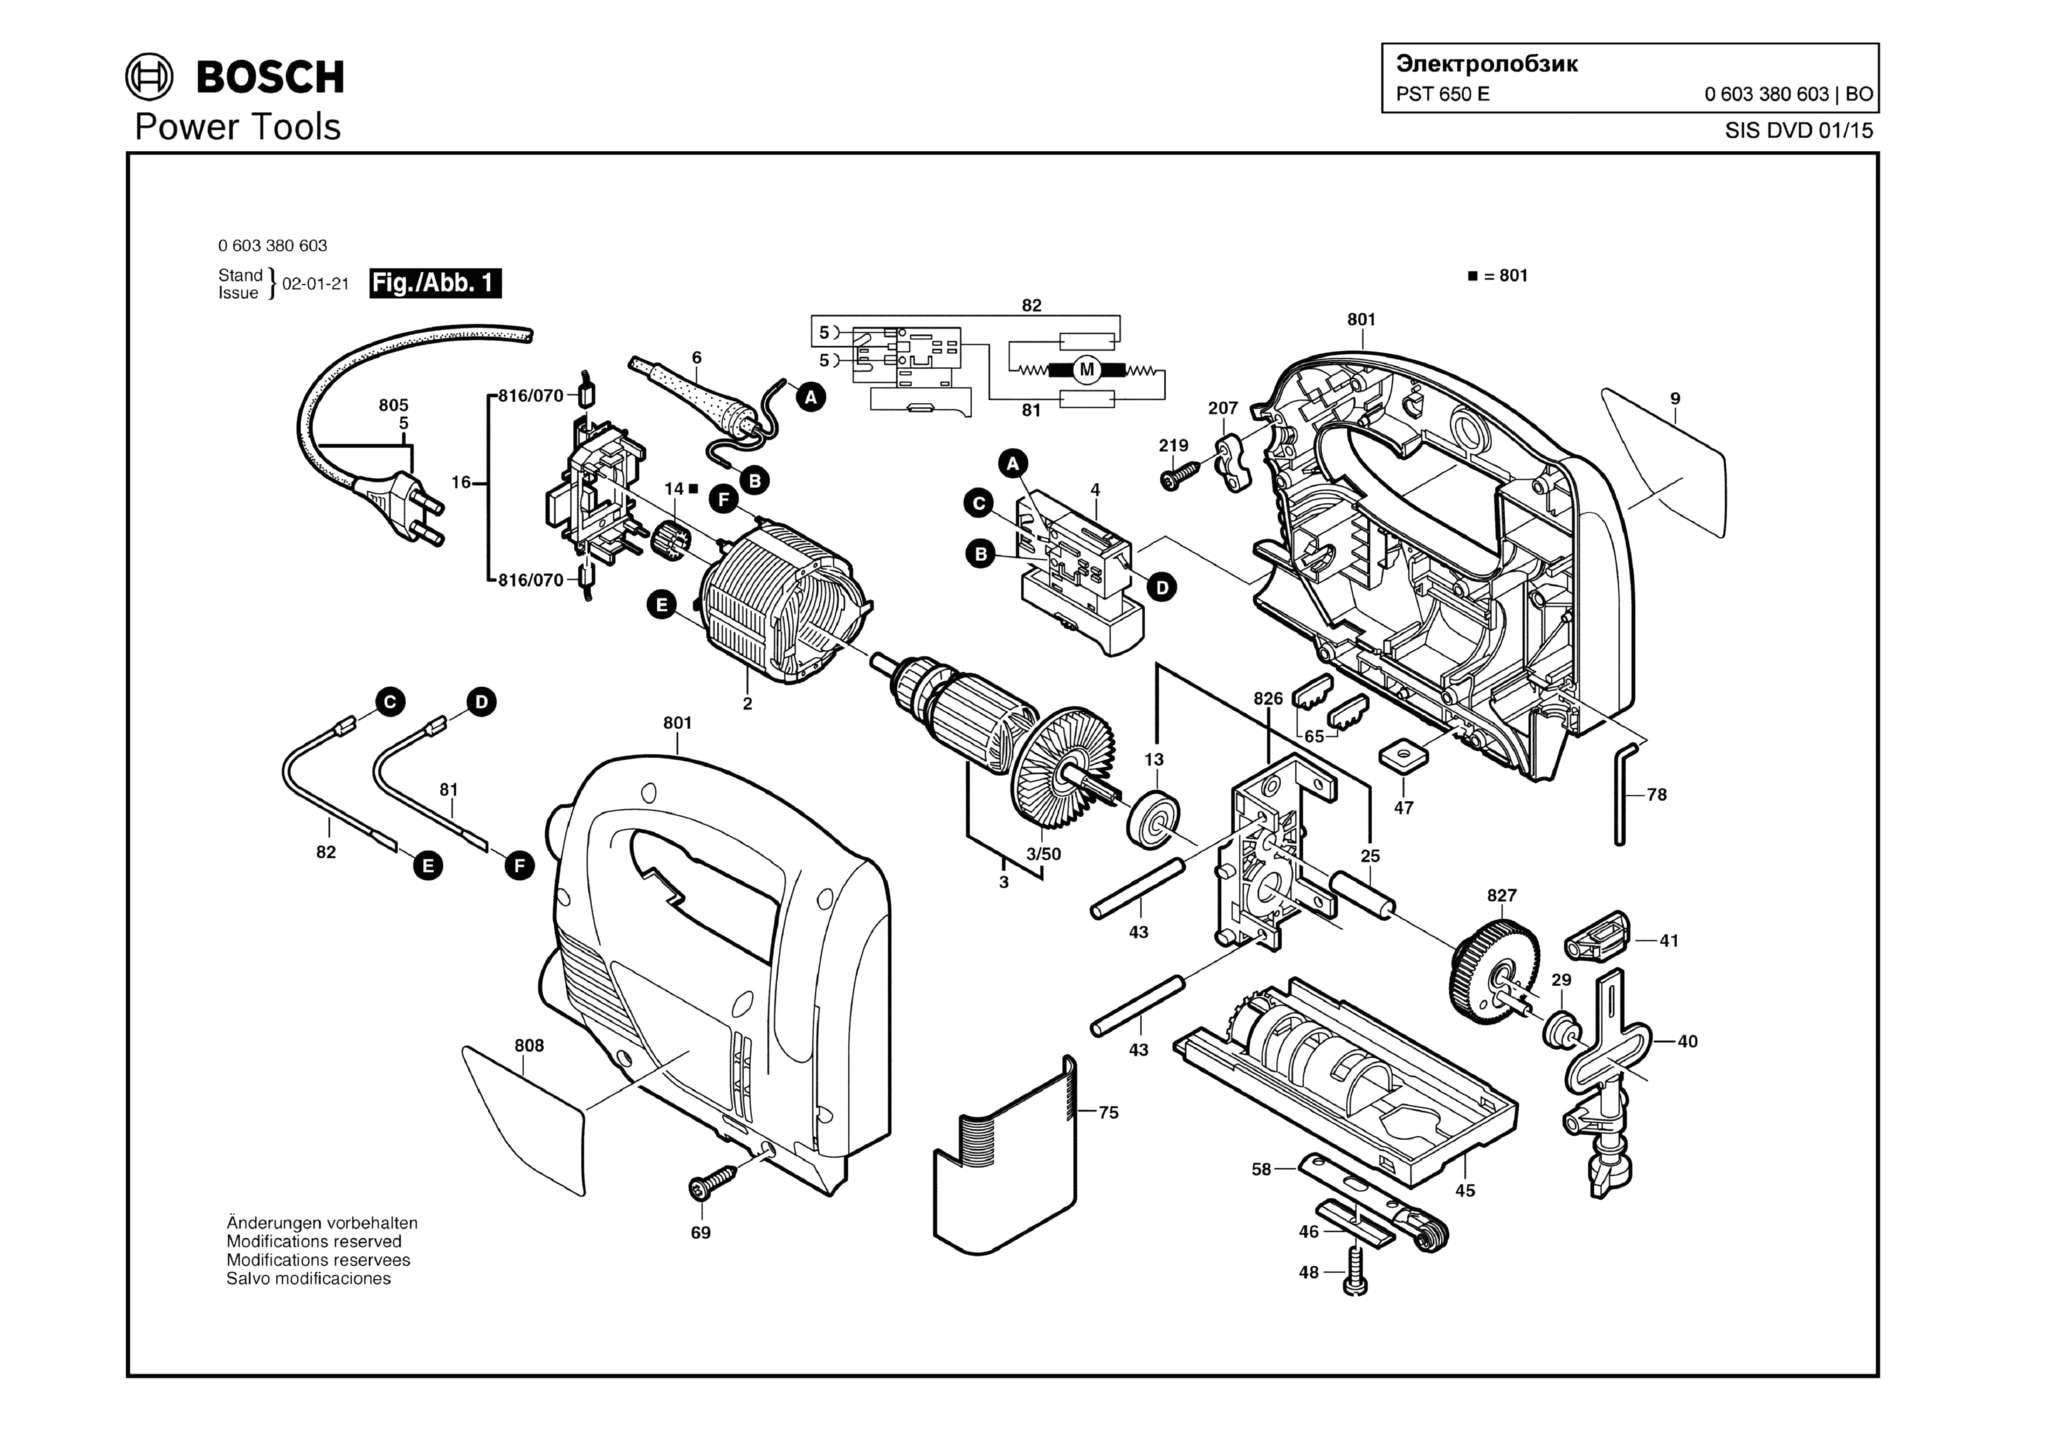 Запчасти, схема и деталировка Bosch PST 650 E (ТИП 0603380603)